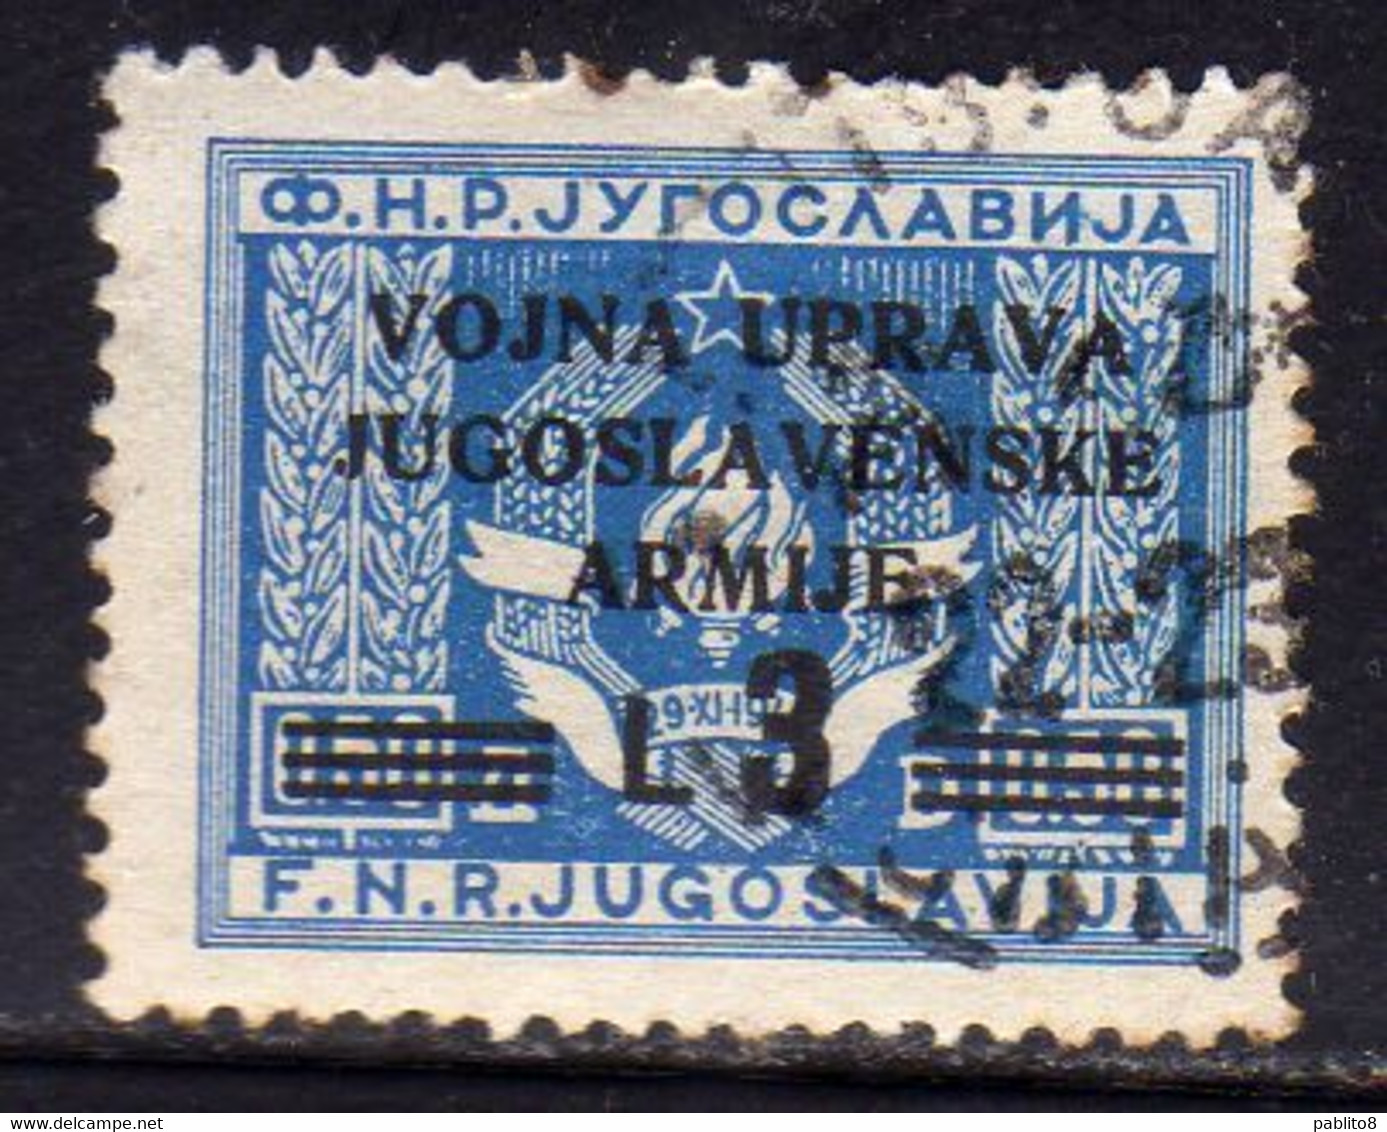 ISTRIA E LITORALE SLOVENO 1947 FRANCOBOLLI DI YUGOSLAVIA LIRE 3 SU 0.50d USATO USED OBLITERE' - Occ. Yougoslave: Littoral Slovène